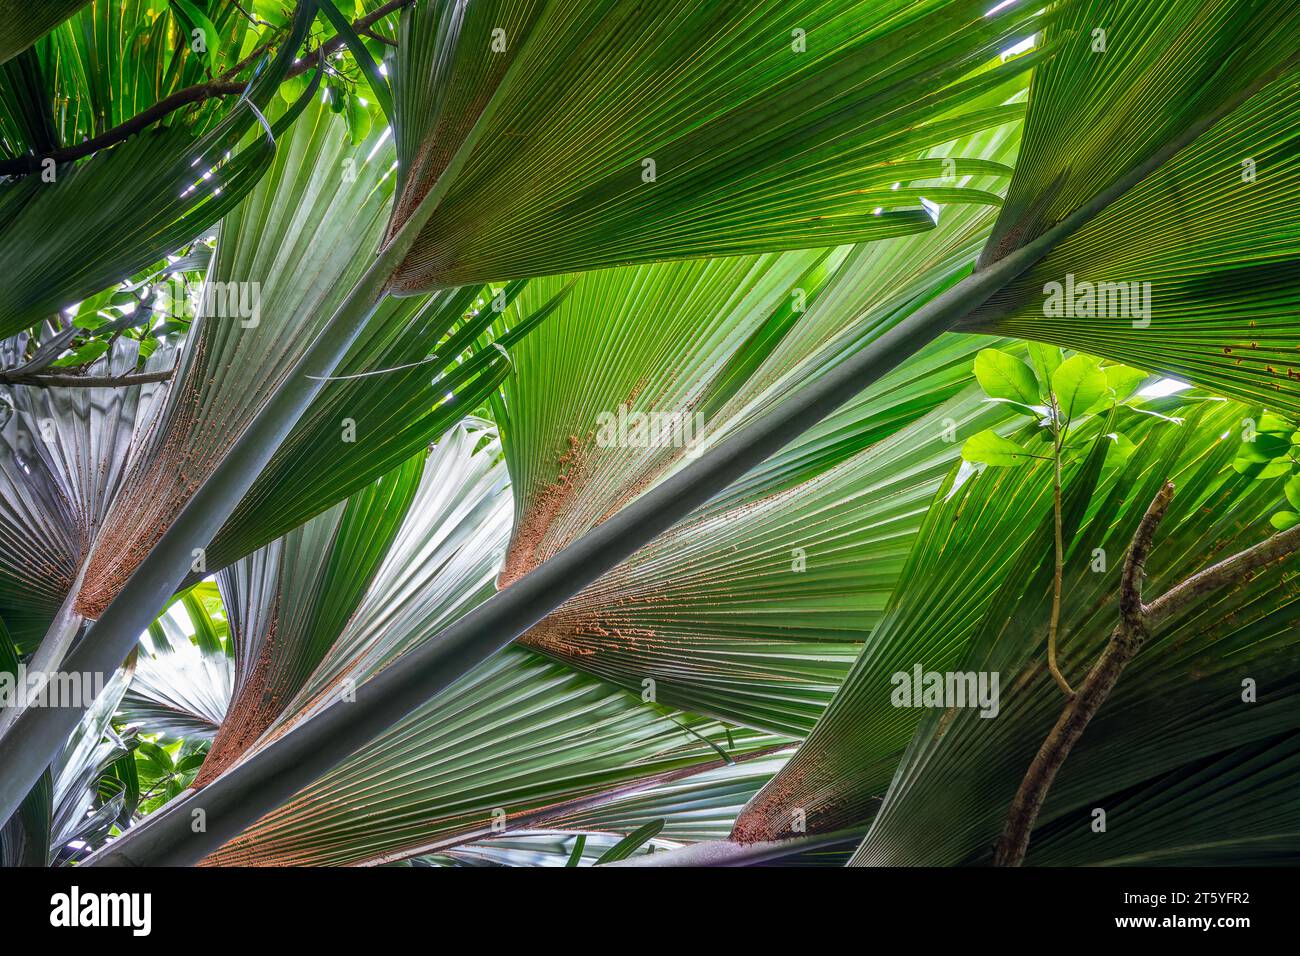 Coco de mer albero (cocco di mare) foglie giganti da vicino, Vallée de mai, Seychelles Foto Stock